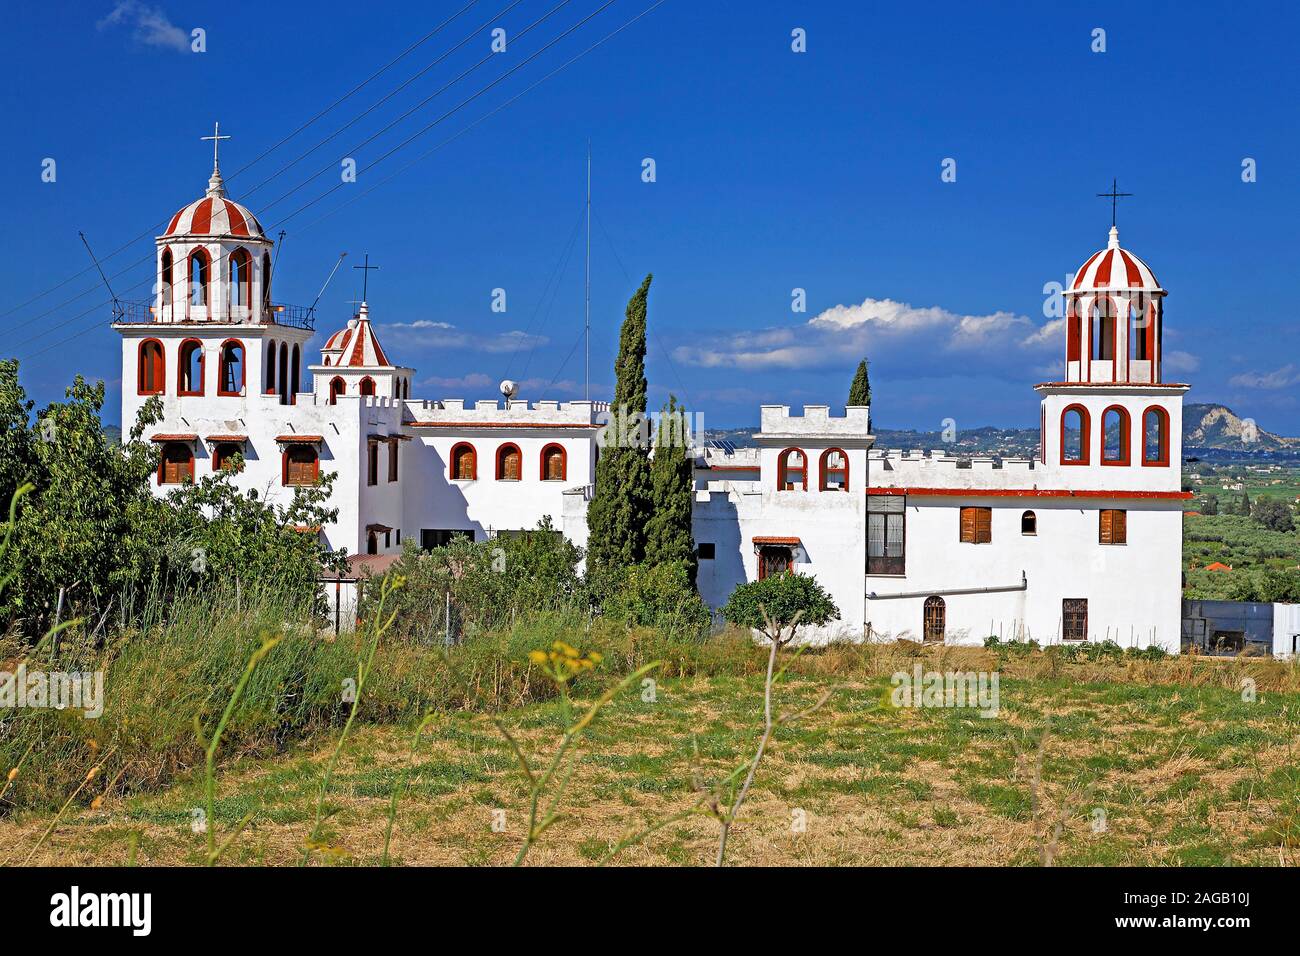 Das Kloster von Eleftheotria bei Macherado, Zakynthos, Griechenland | Kloster von Eleftheotria an Macherado, Insel Zakynthos, Griechenland Stockfoto